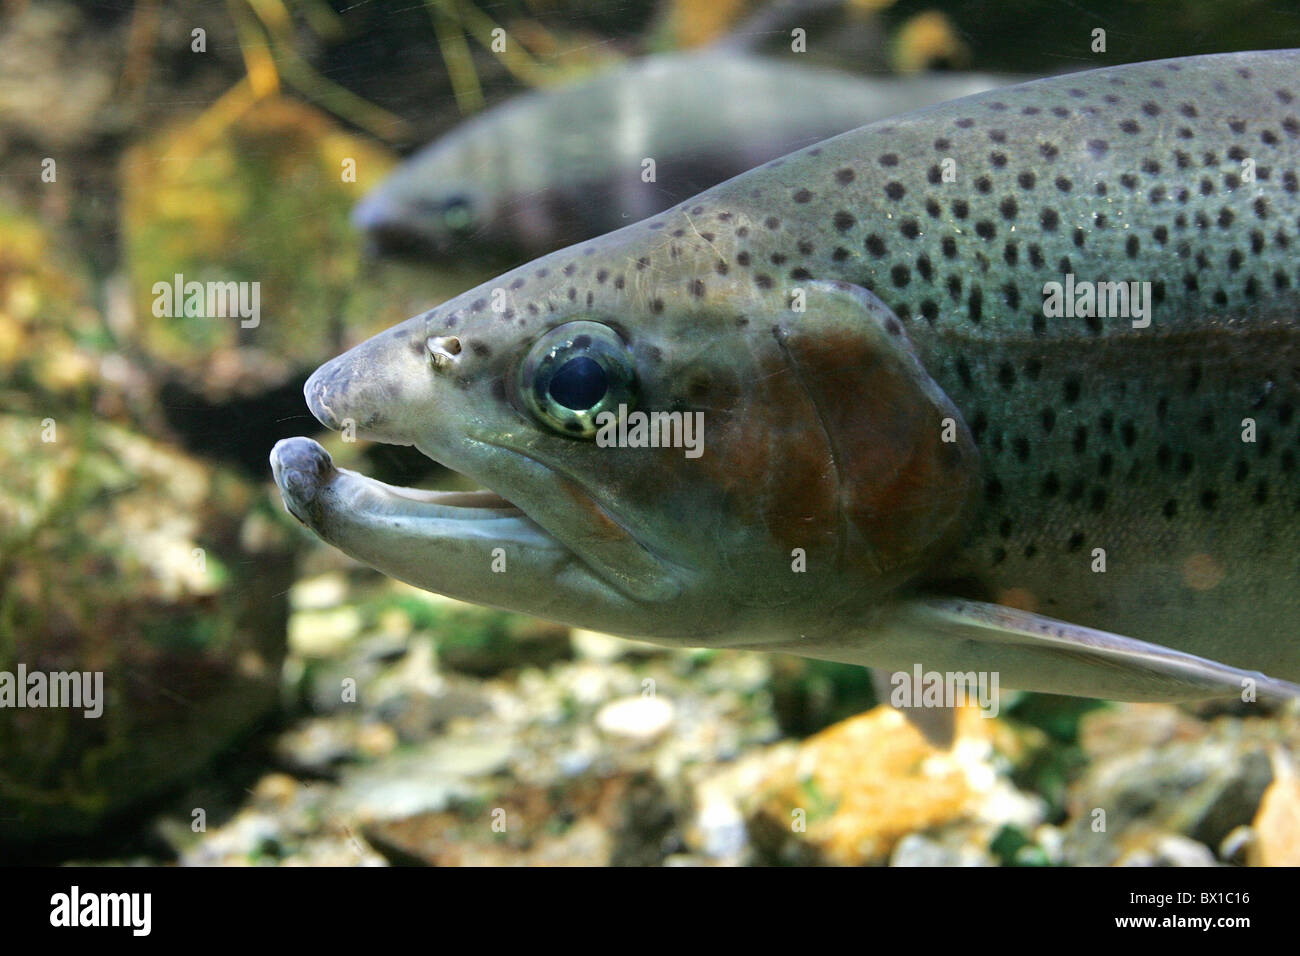 Rainbow trout Oncorhynchus mykiss underwater fish brook stream fresh water fish Neozoen invasive not local Stock Photo